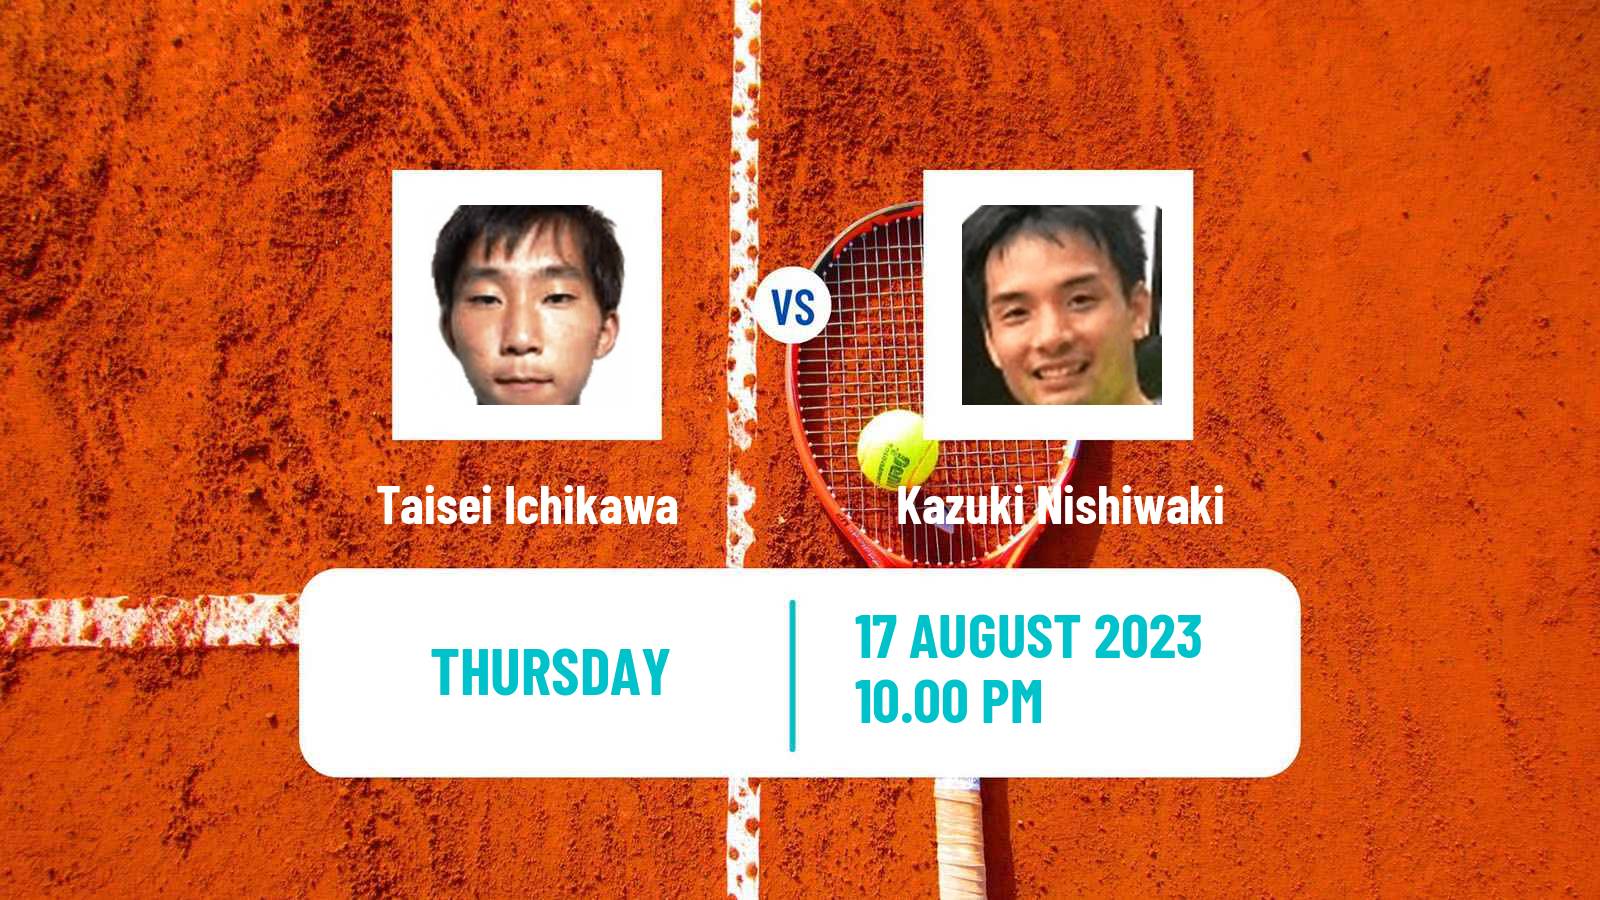 Tennis ITF M25 Tainan Men Taisei Ichikawa - Kazuki Nishiwaki